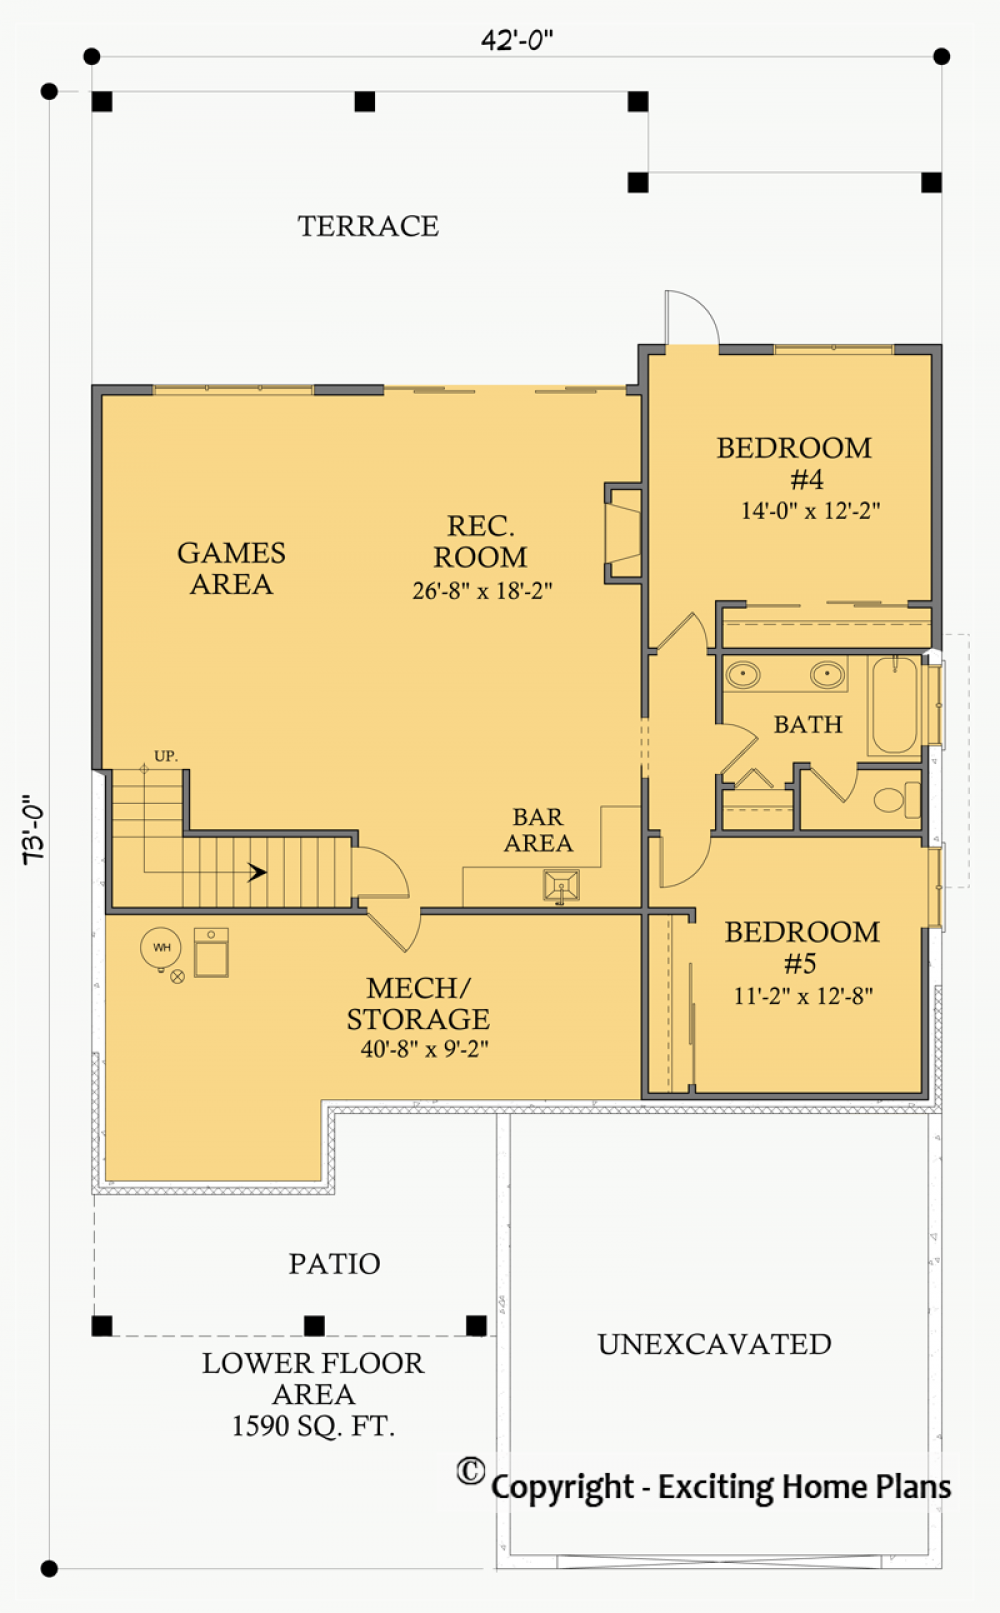 House Plan E1006-10 Lower Floor Plan